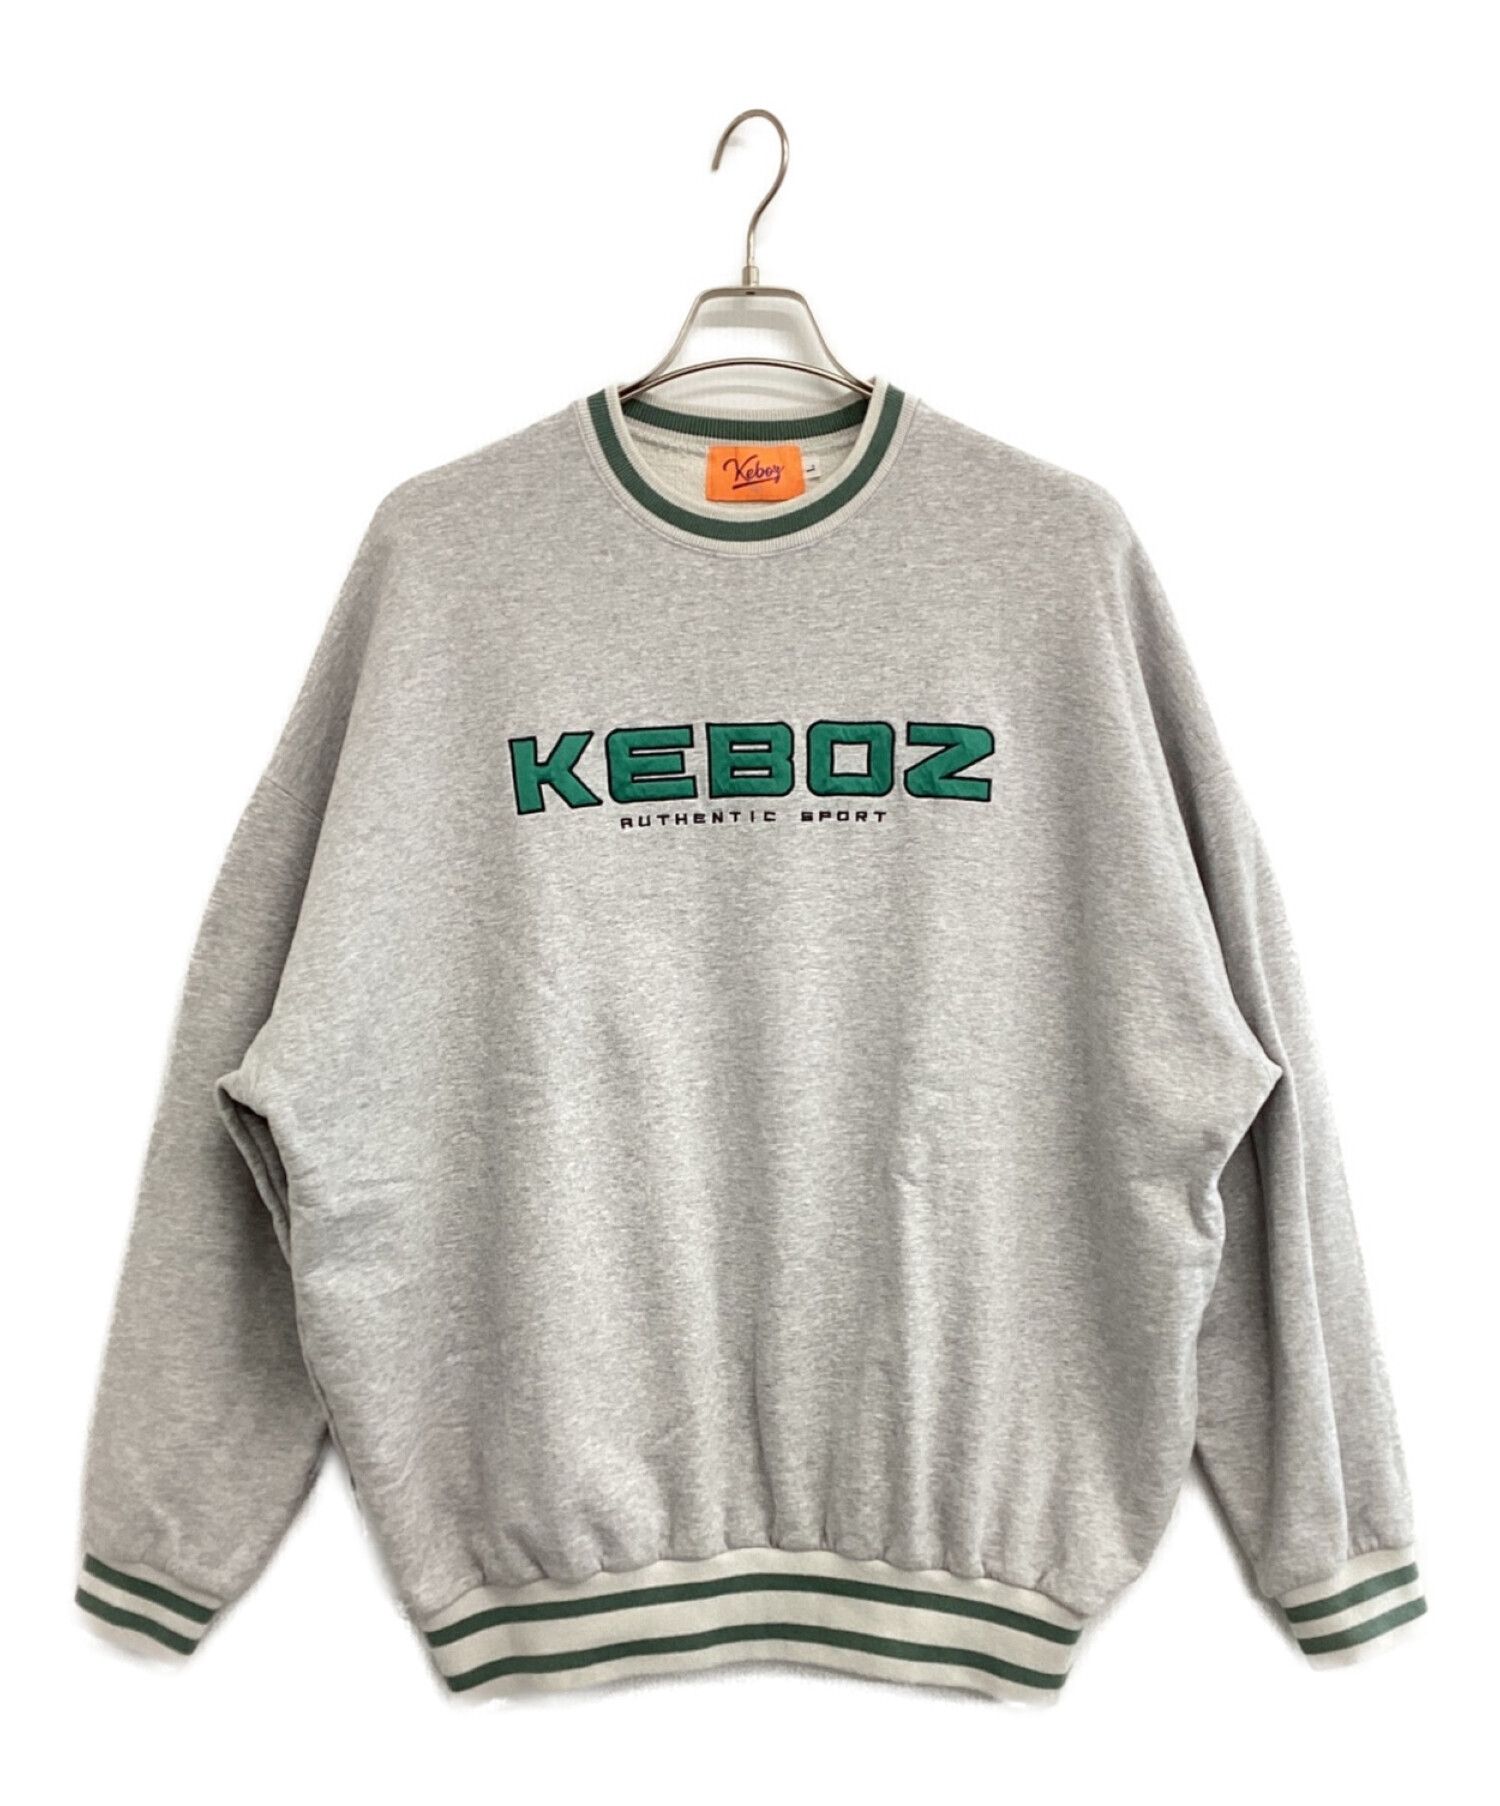 KEBOZ (ケボズ) ロゴスウェット グレー×グリーン サイズ:L